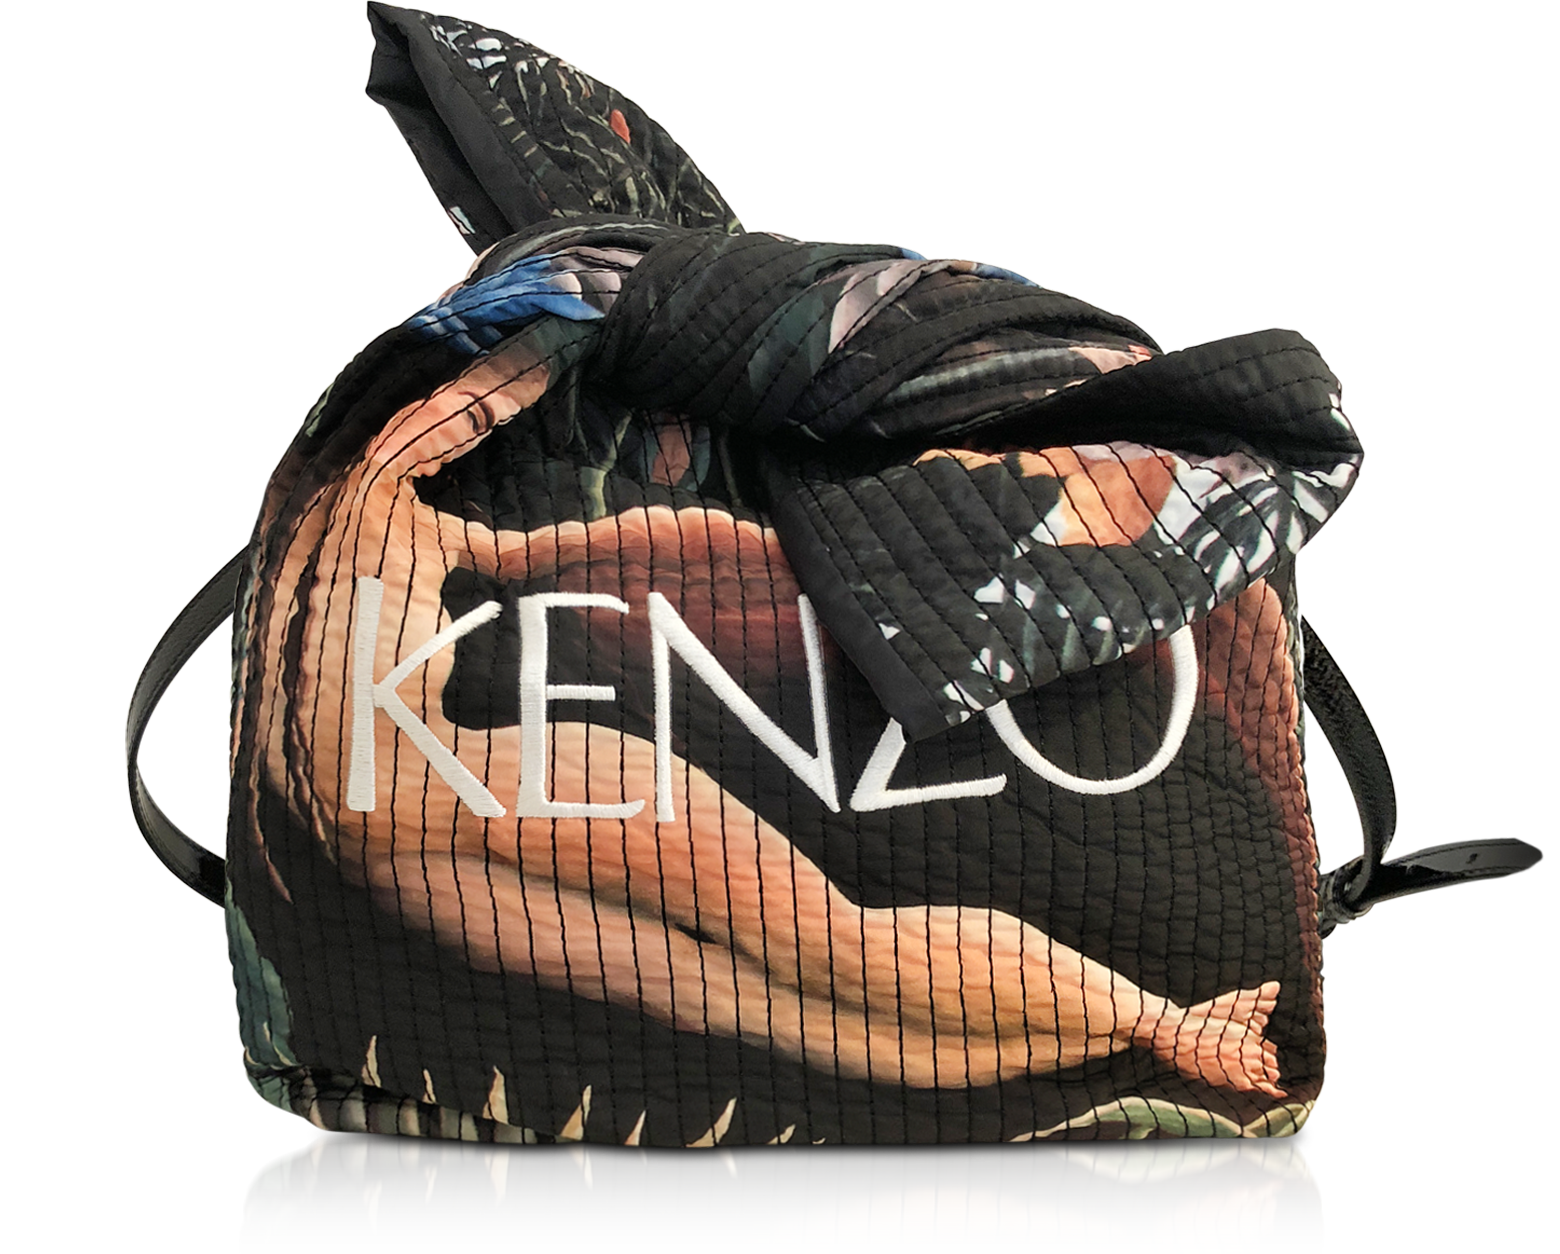 kenzo nylon backpack